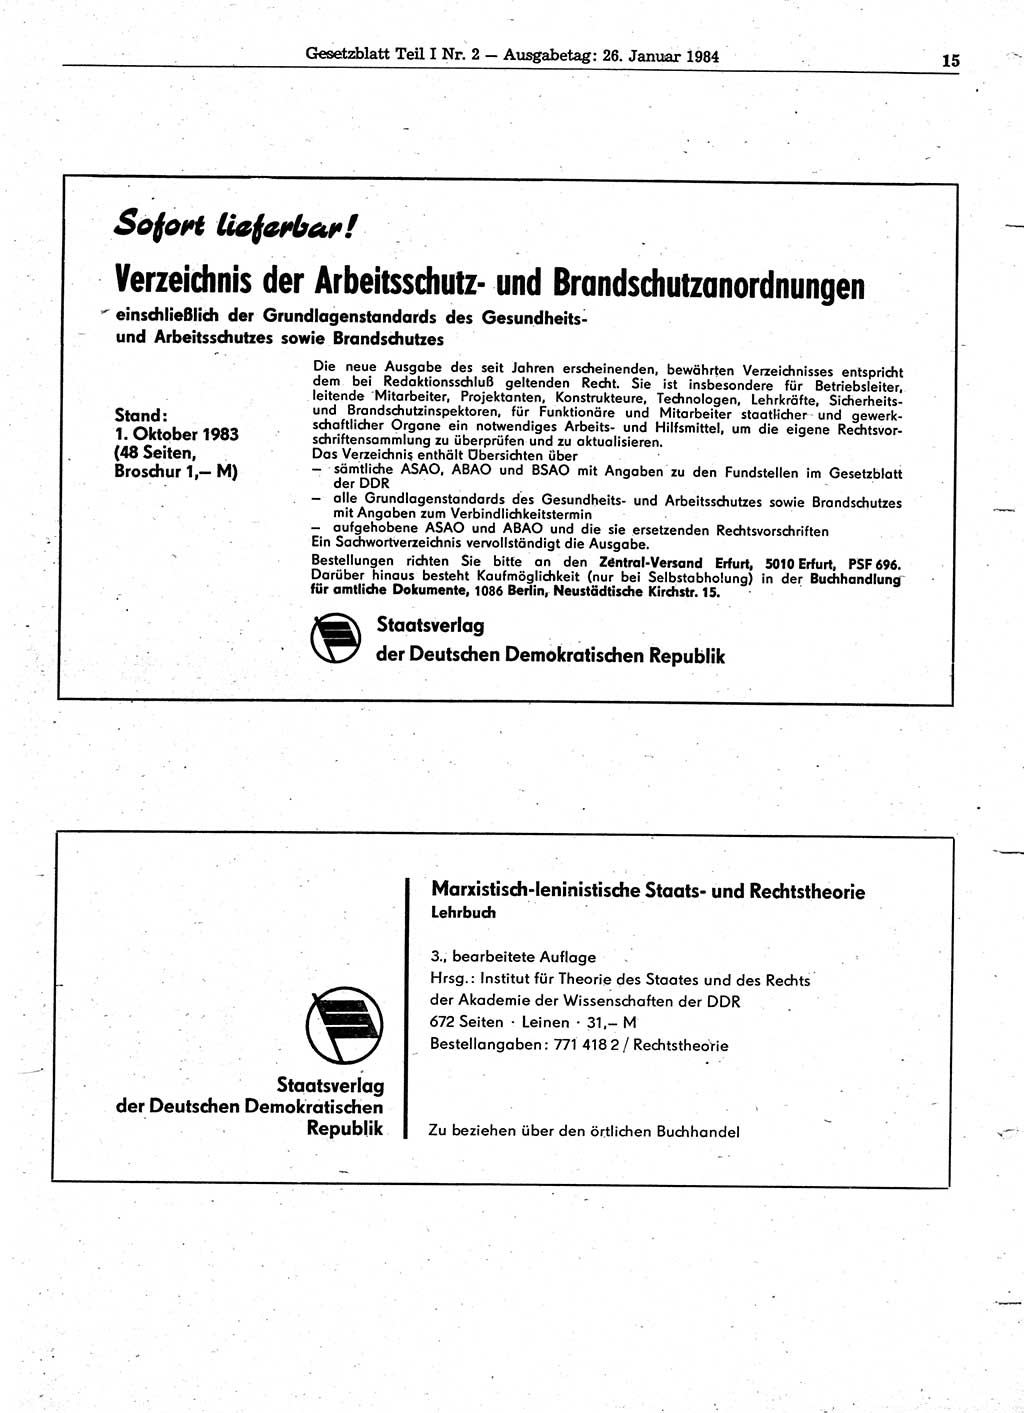 Gesetzblatt (GBl.) der Deutschen Demokratischen Republik (DDR) Teil Ⅰ 1984, Seite 15 (GBl. DDR Ⅰ 1984, S. 15)